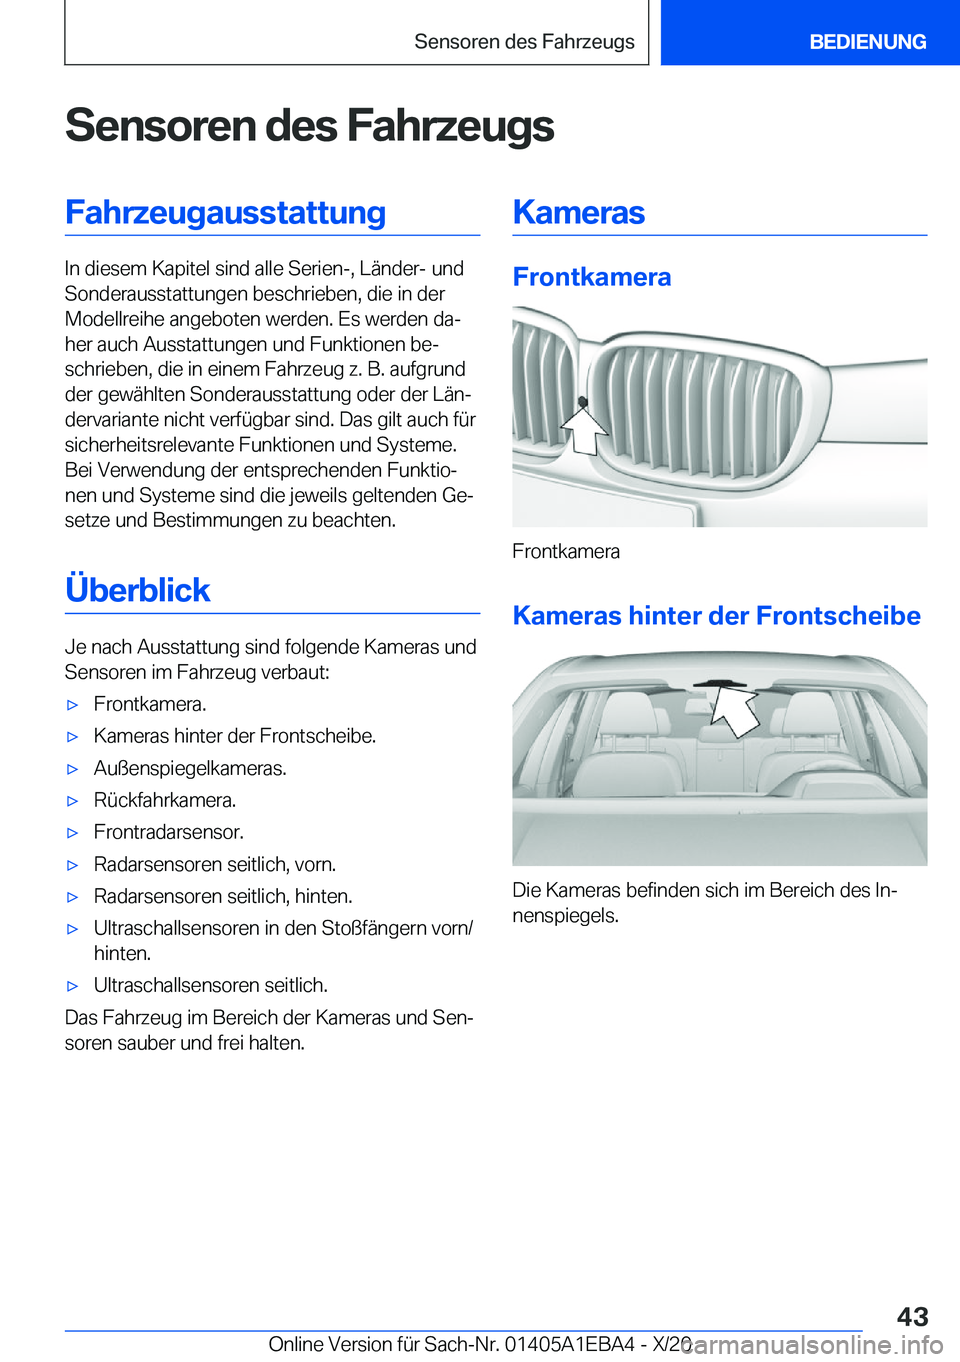 BMW 3 SERIES 2021  Betriebsanleitungen (in German) �S�e�n�s�o�r�e�n��d�e�s��F�a�h�r�z�e�u�g�s�F�a�h�r�z�e�u�g�a�u�s�s�t�a�t�t�u�n�g
�I�n��d�i�e�s�e�m��K�a�p�i�t�e�l��s�i�n�d��a�l�l�e��S�e�r�i�e�n�-�,��L�